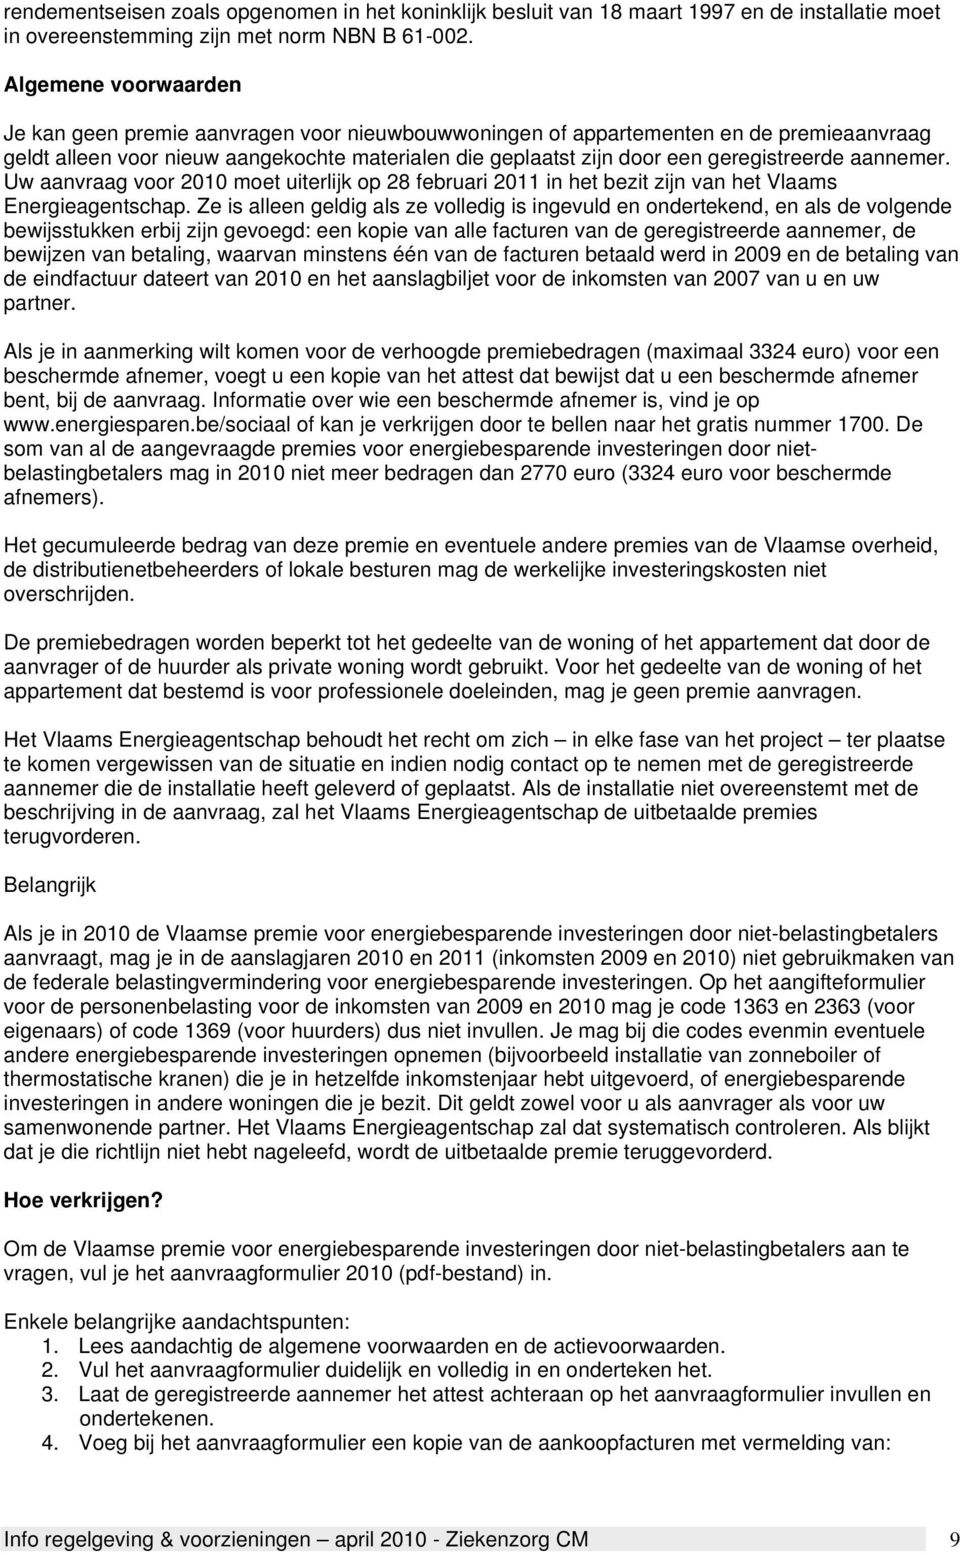 geregistreerde aannemer. Uw aanvraag voor 2010 moet uiterlijk op 28 februari 2011 in het bezit zijn van het Vlaams Energieagentschap.